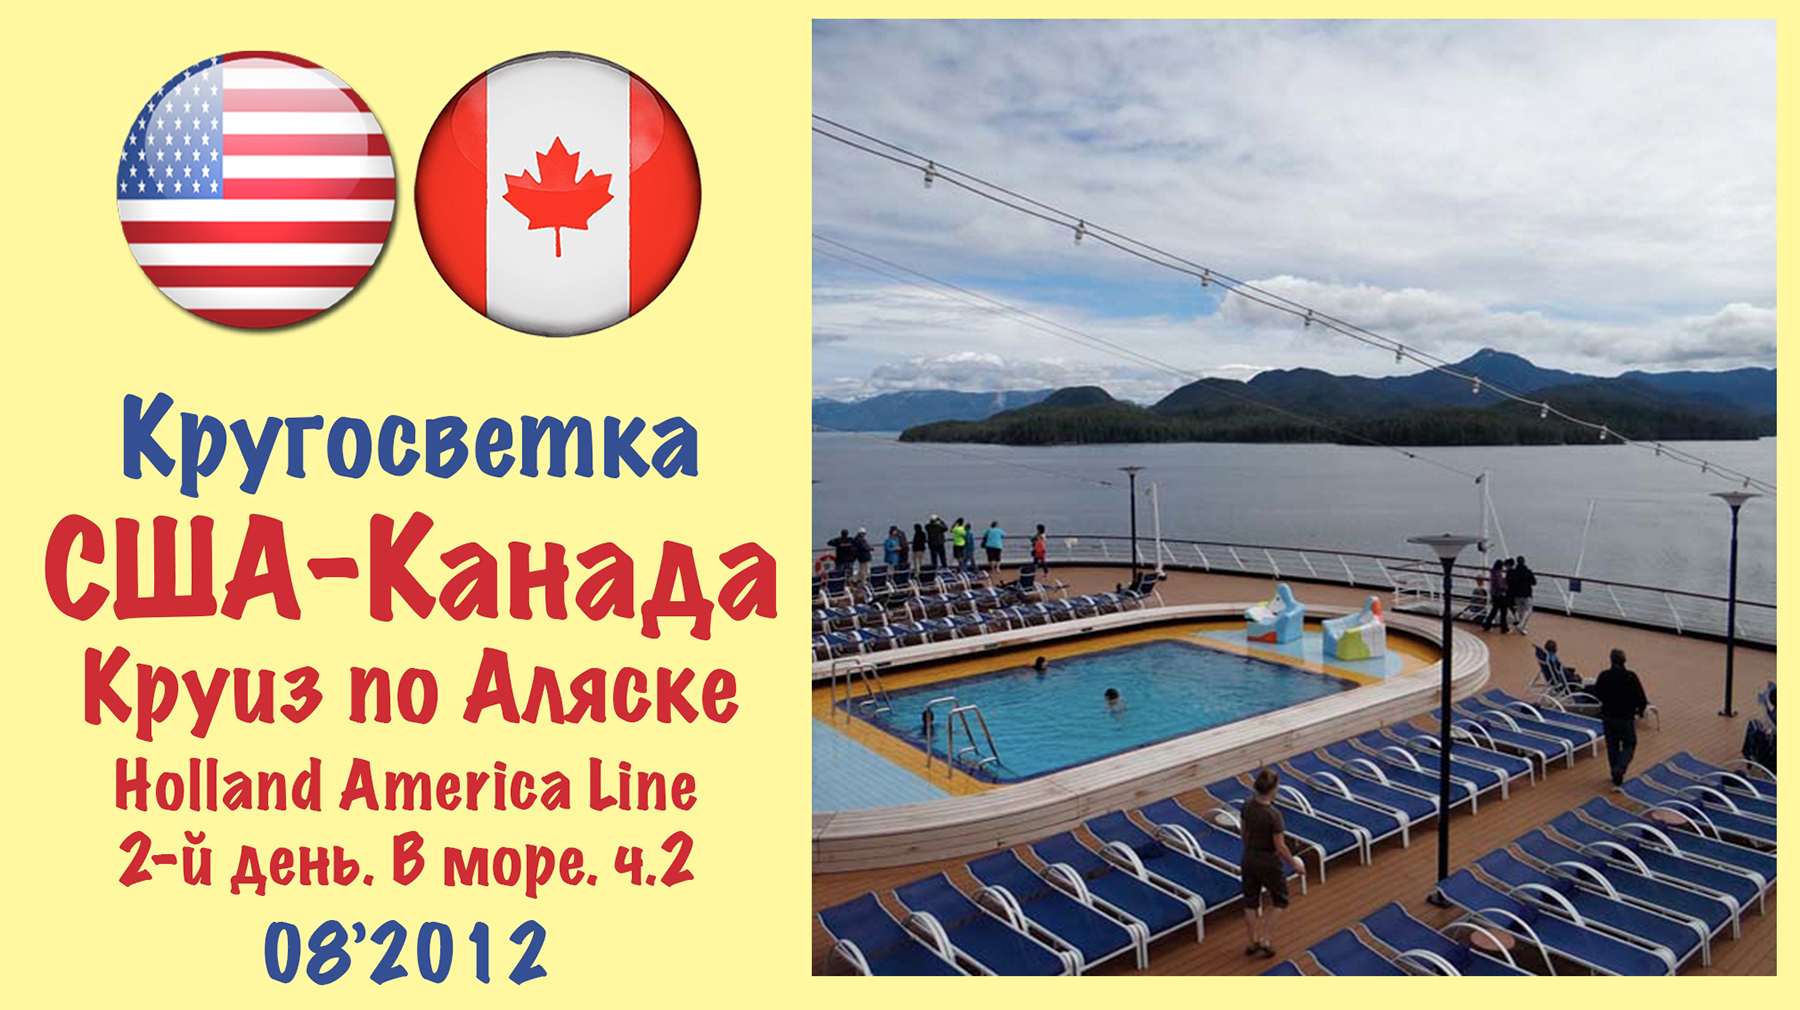 Кругосветка-2012. Круиз по Аляске. Holland America Line. 2-й день. В море. Ч.2.